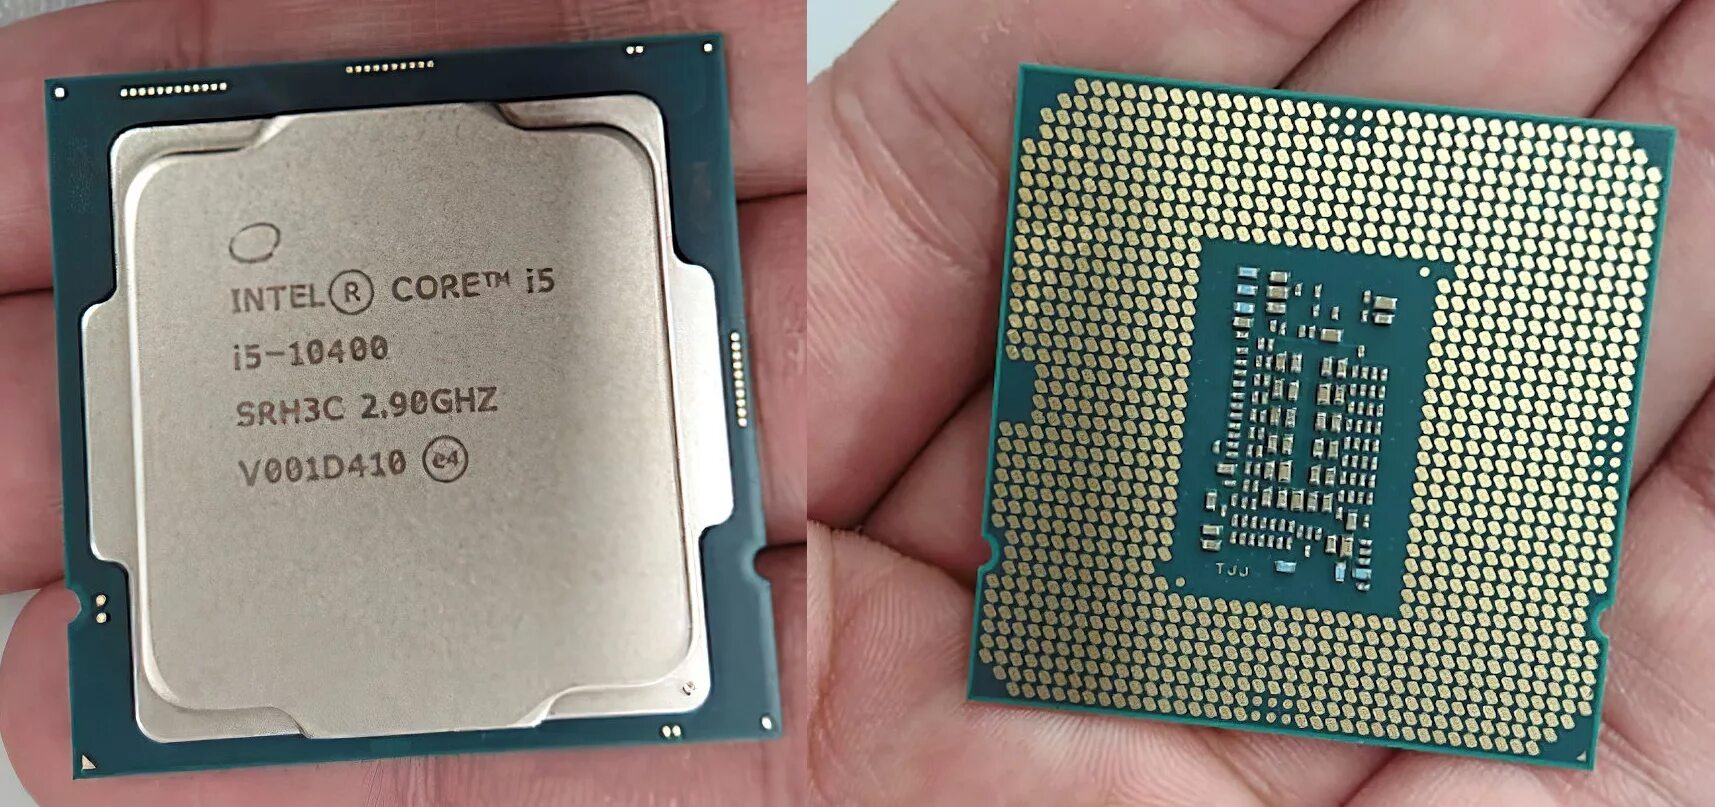 Процессор Intel Core i5-10400. Процессор Intel Core i5 12400f. Процессор Intel Core i5-10400f OEM. Процессор Intel Core i5 Comet Lake i5-10400f OEM. I5 13400f сравнение